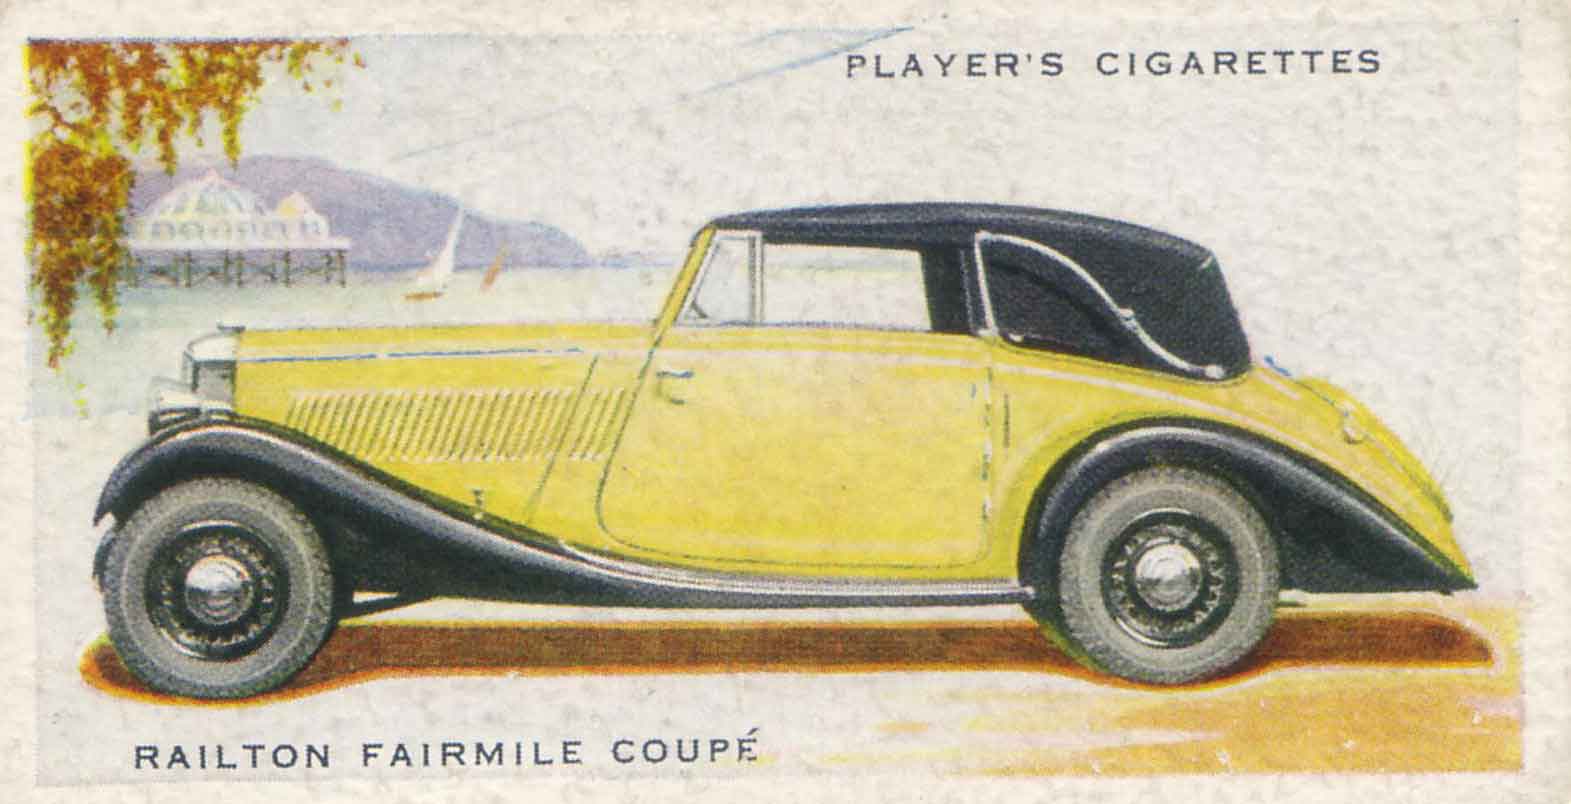 Railton Fairmile Coupé. 1937 cigarette card.